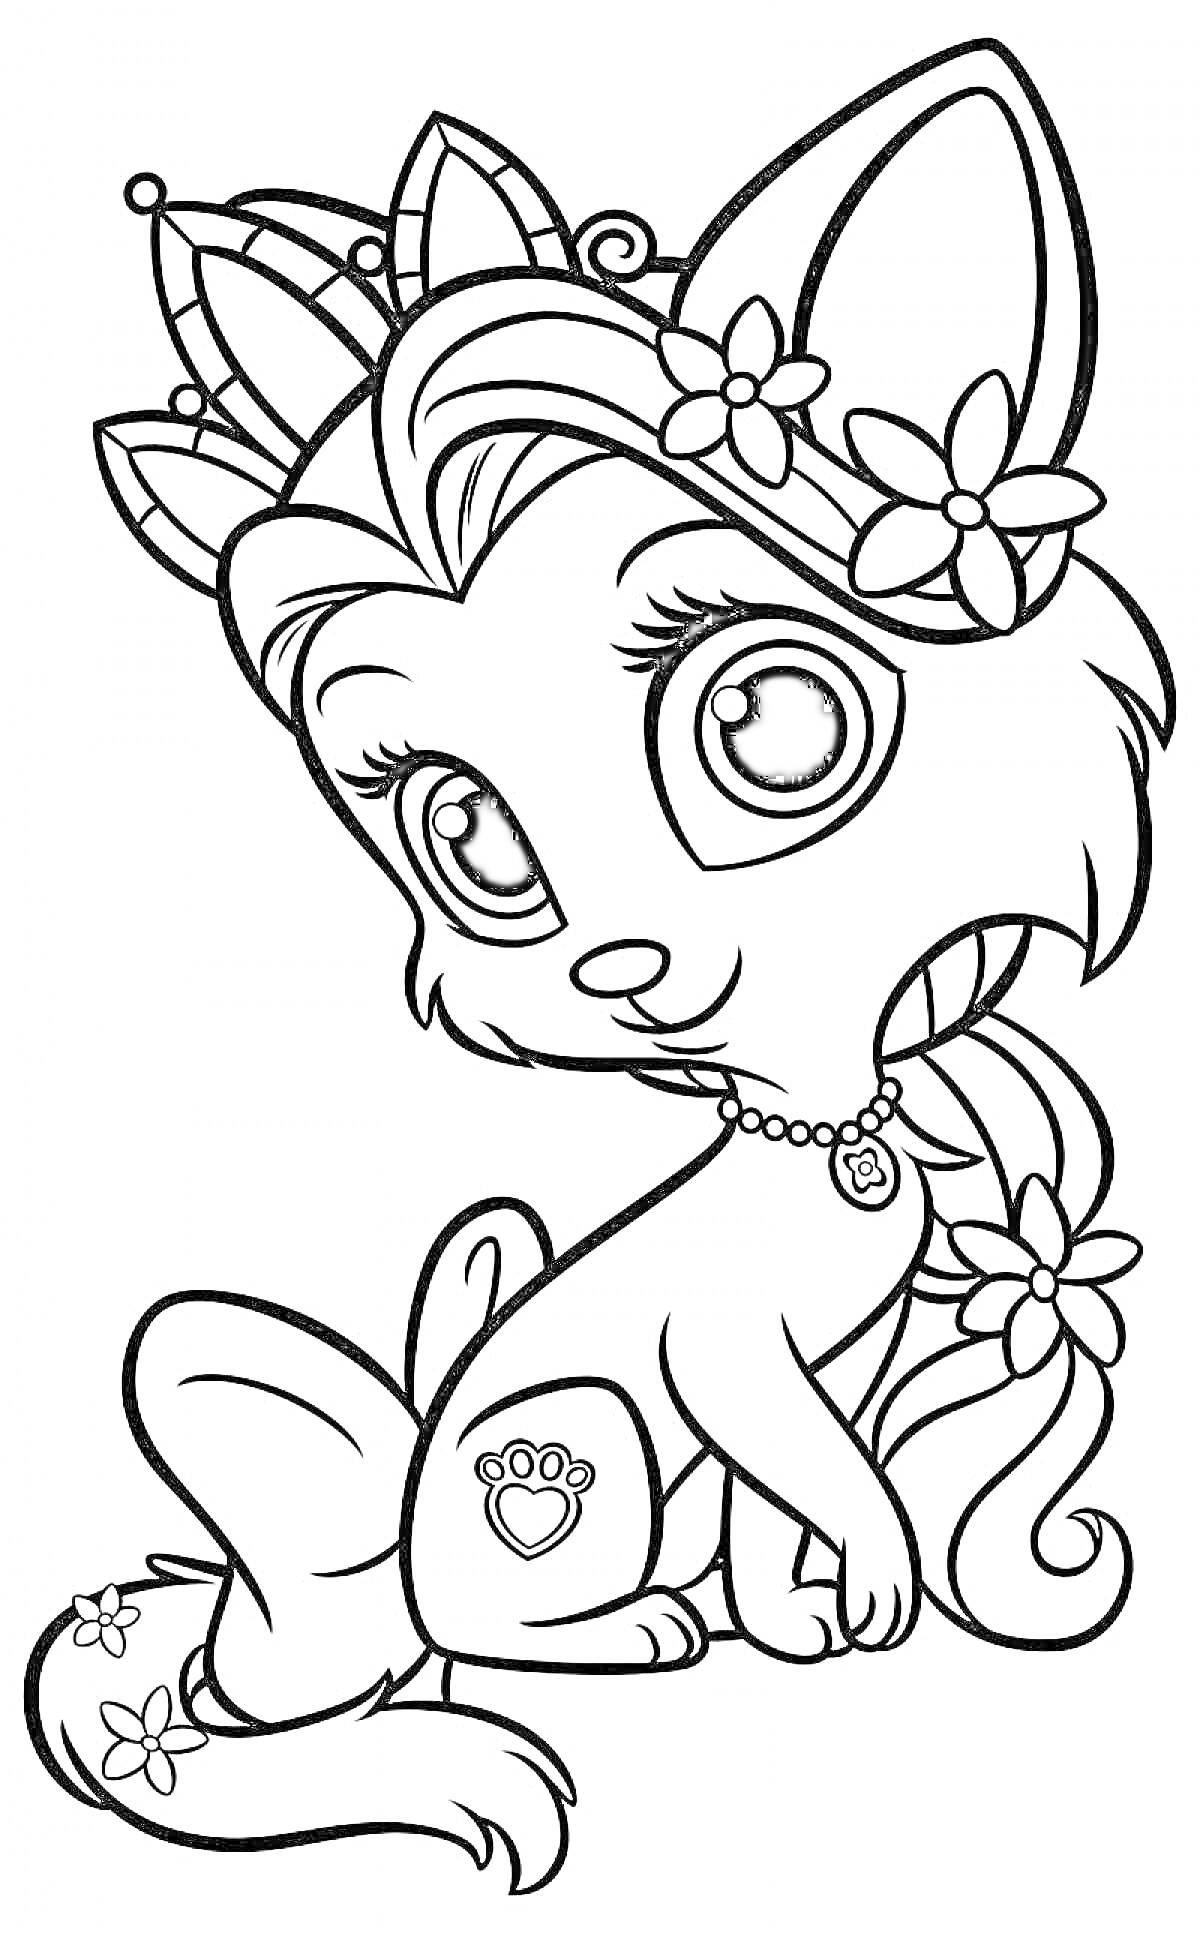 Раскраска Котик с короной и цветами в волосах